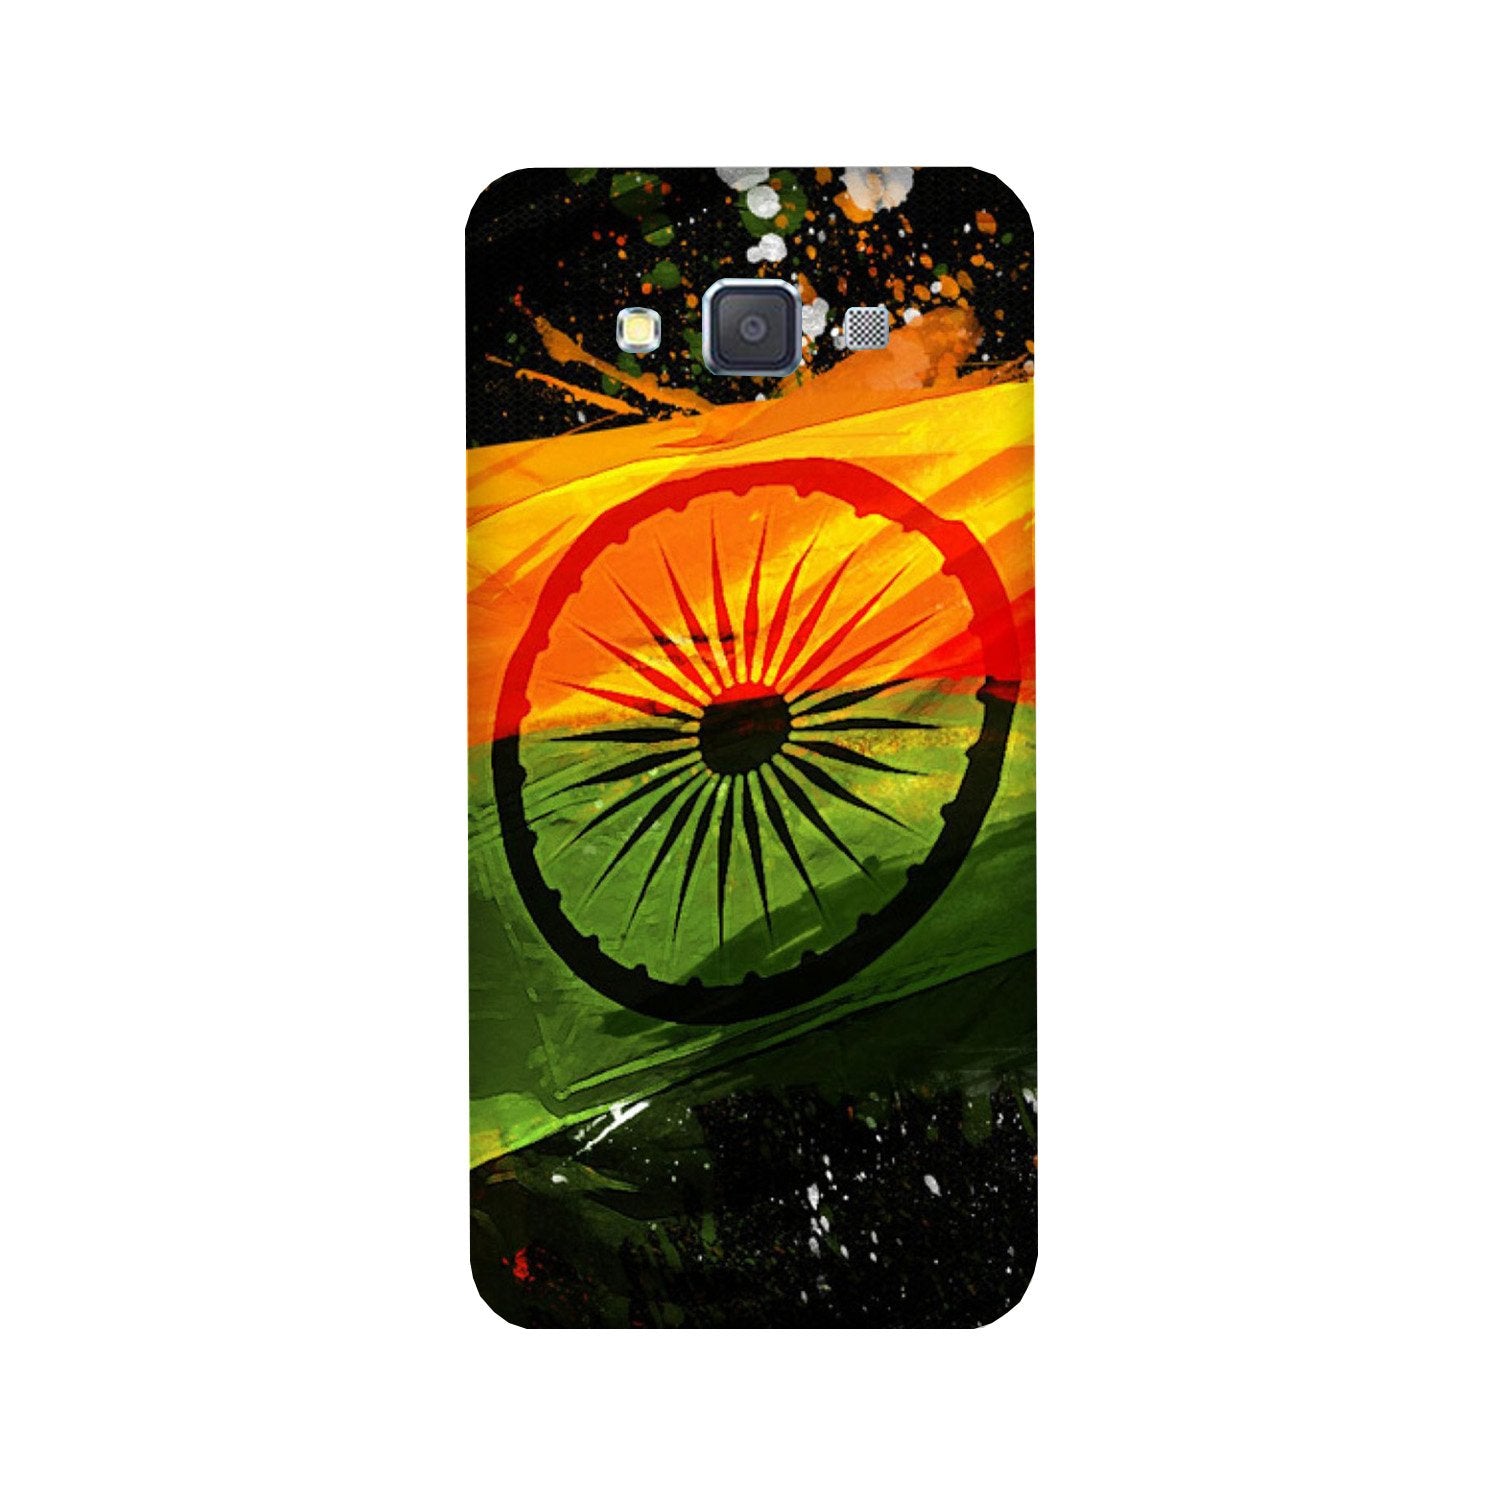 Indian Flag Case for Galaxy E7(Design - 137)